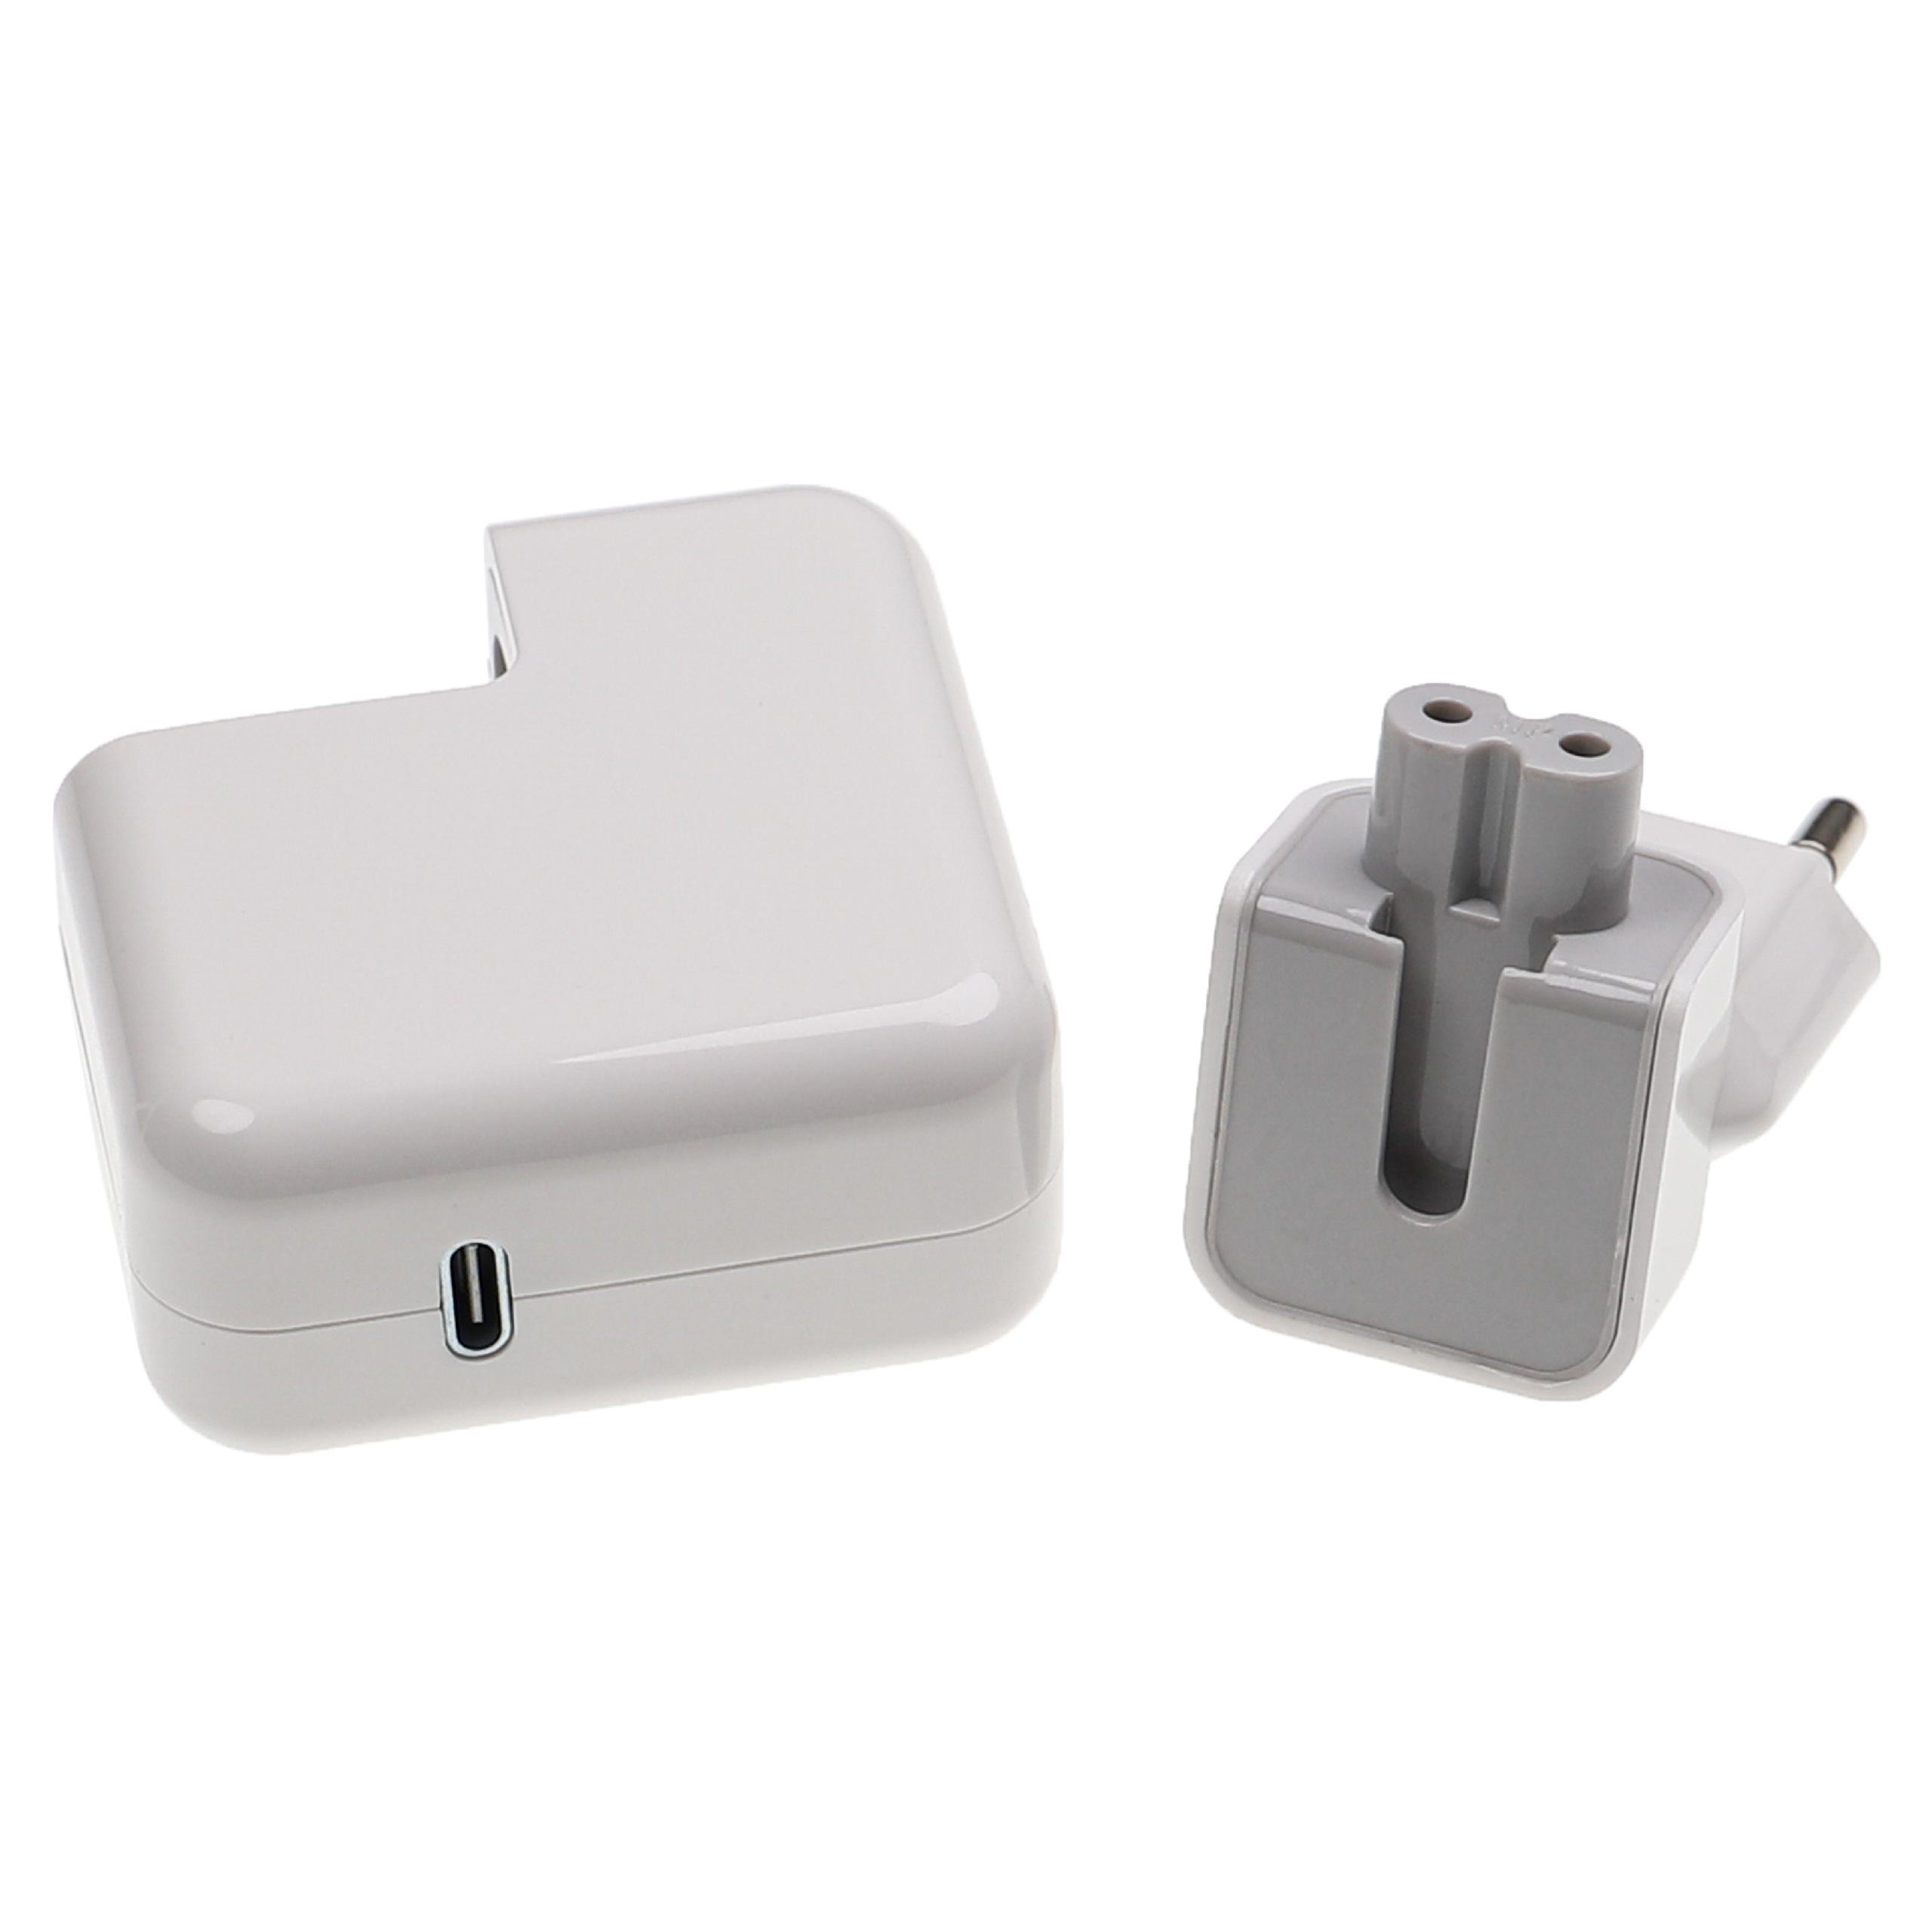 Alimentatore di rete USB C per cellulari, tablet - Caricabatterie USB, adattatore da15 / 9 / 5 V